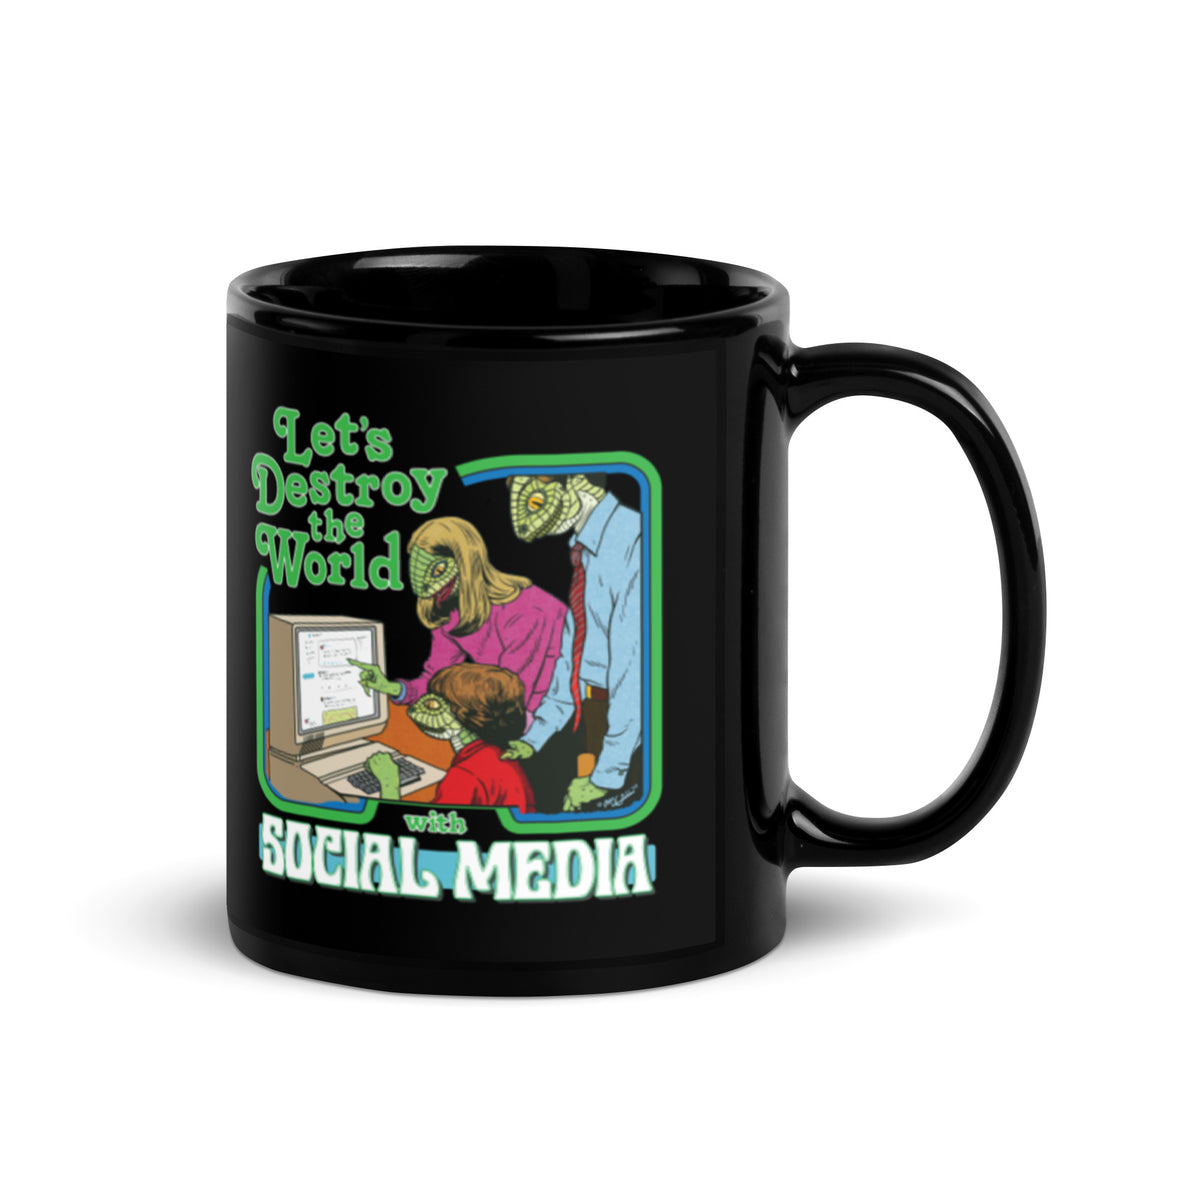 Let’s Destroy the World with Social Media Mug